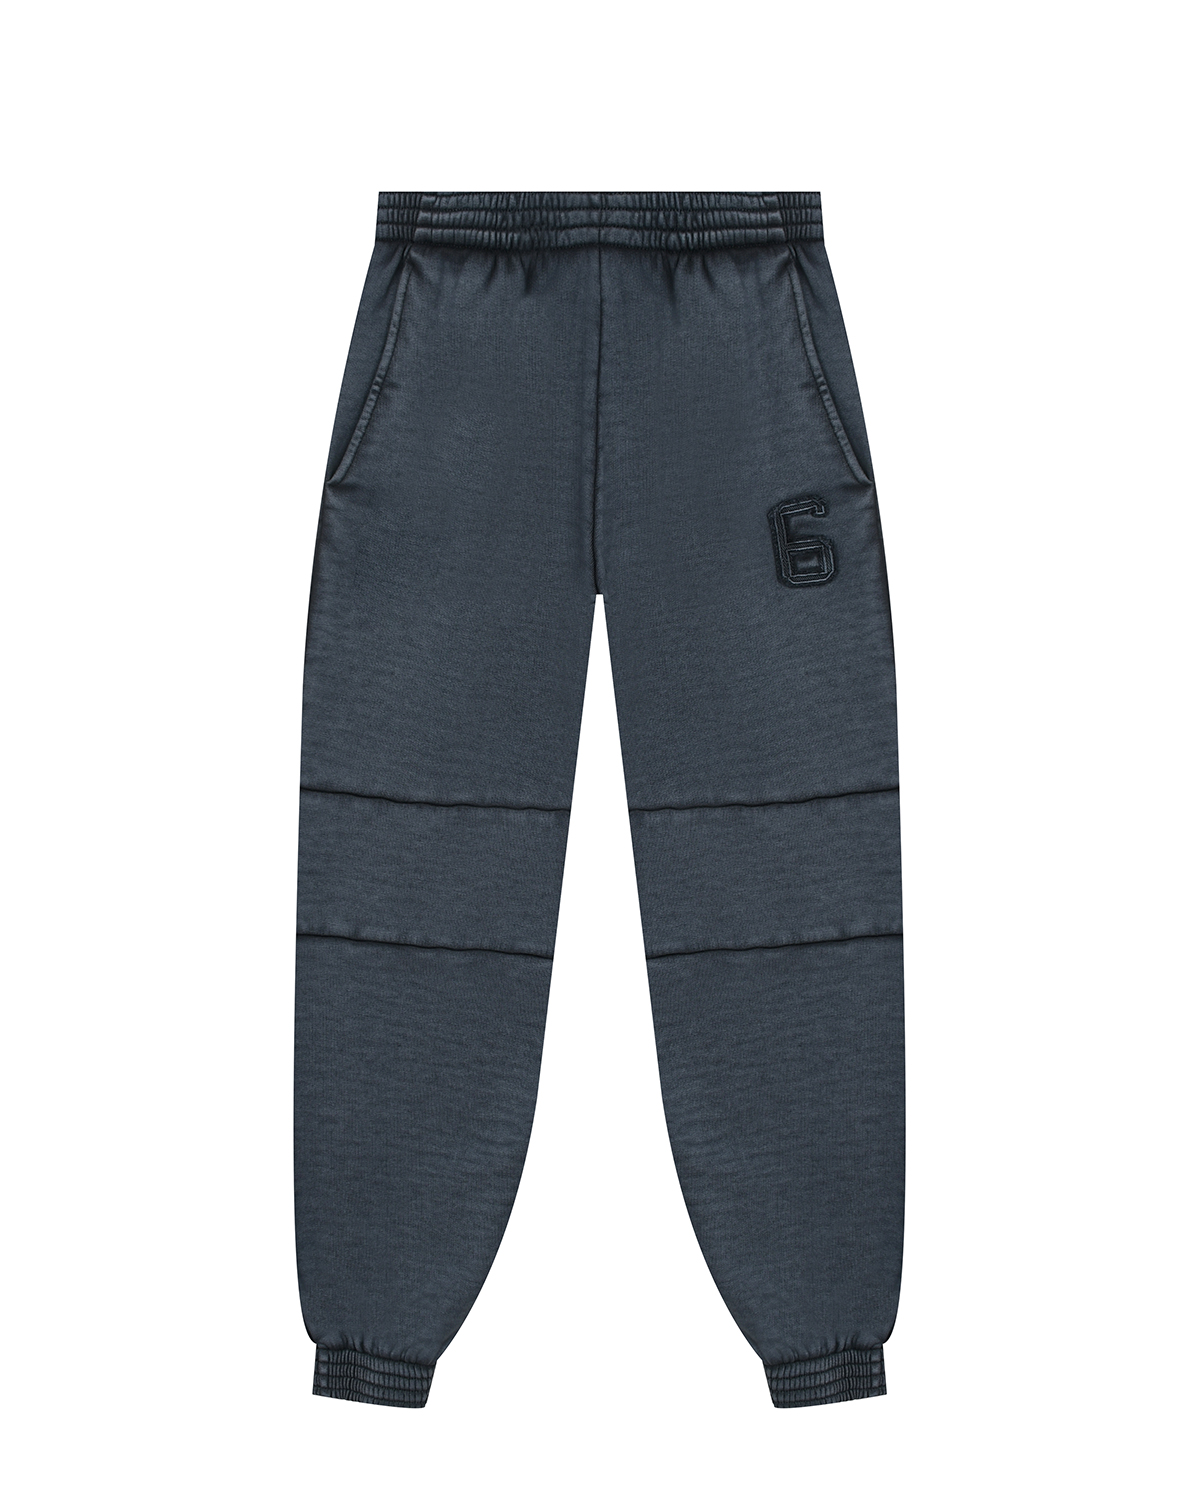 Спортивные брюки с нашивкой MM6 Maison Margiela детские, размер 140, цвет серый - фото 1